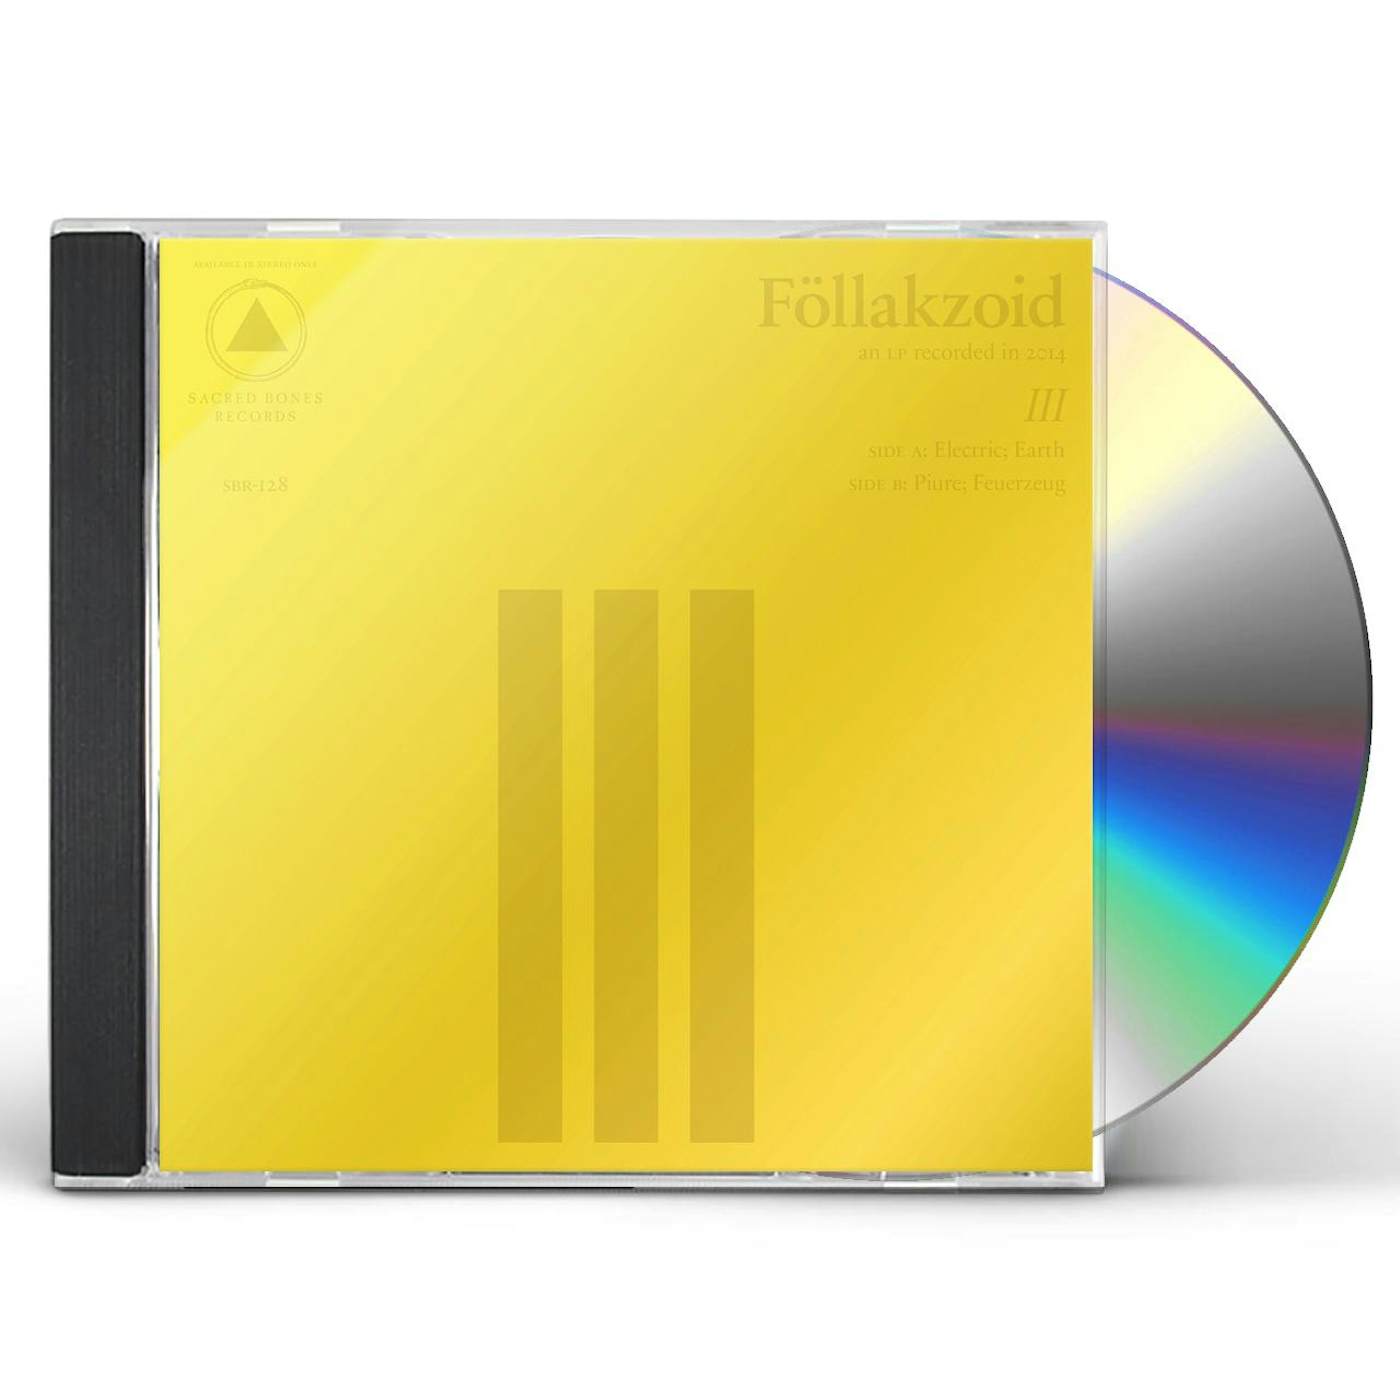 Föllakzoid III CD